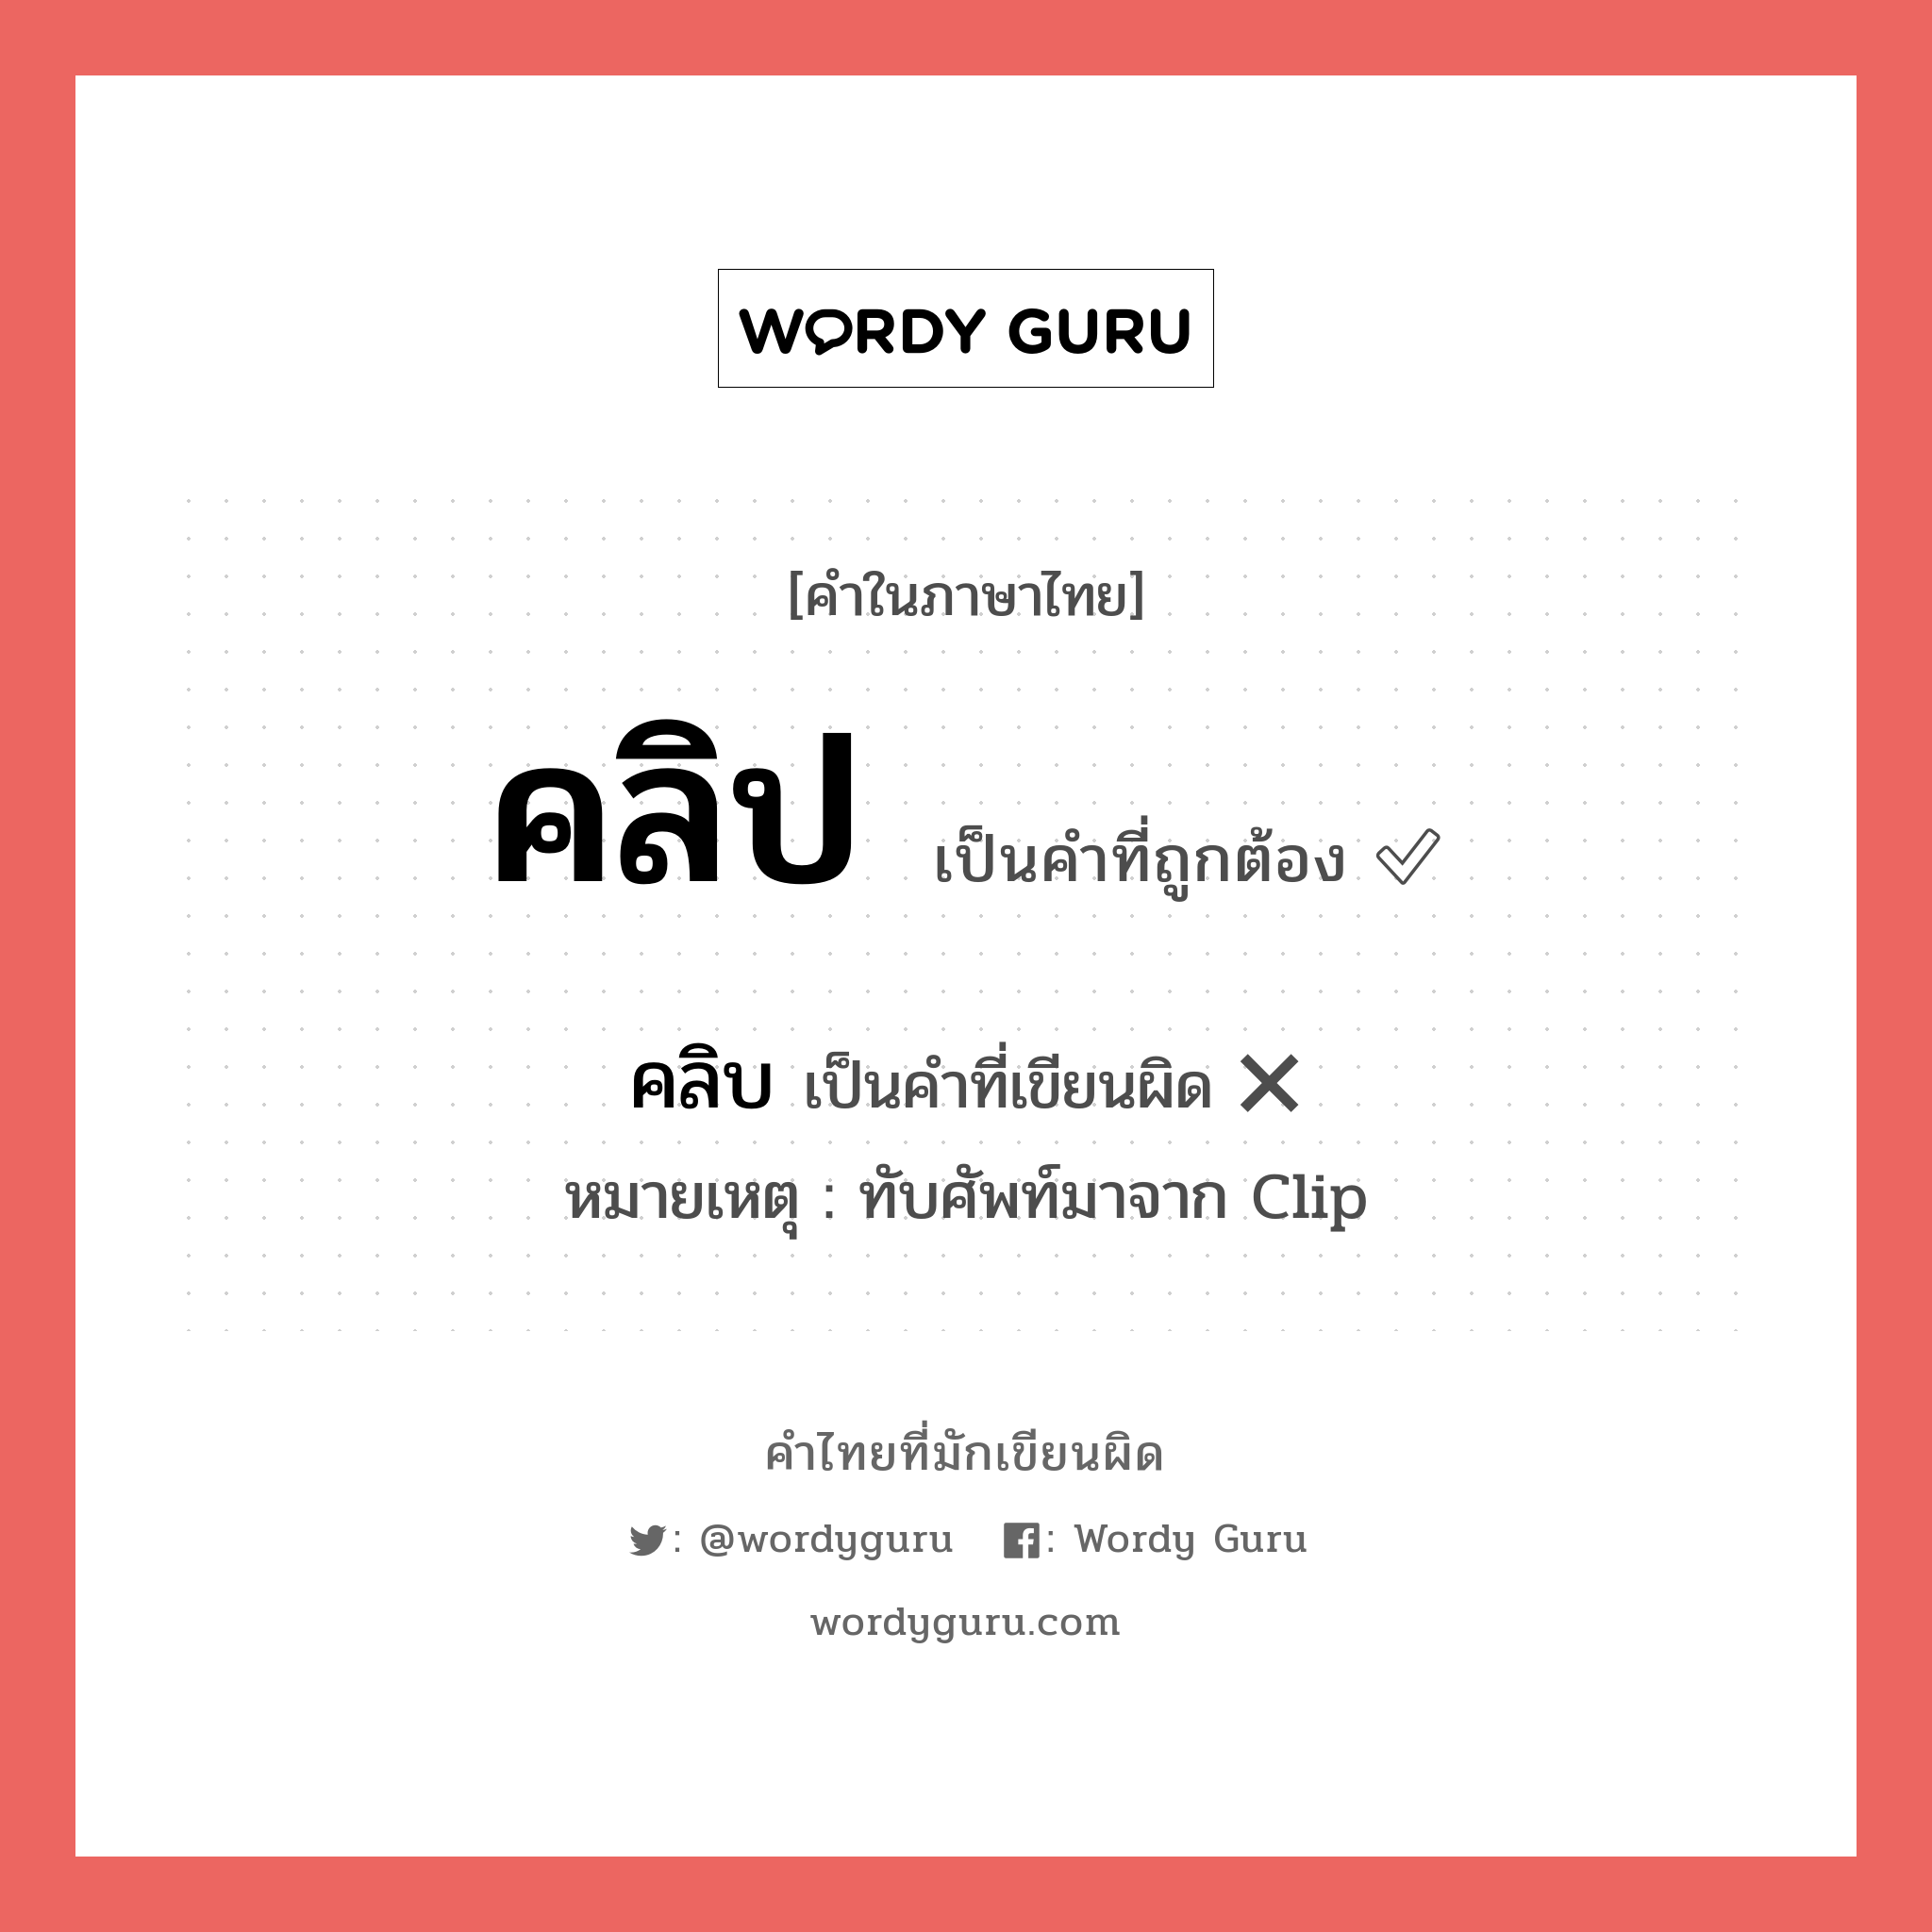 คลิบ หรือ คลิป คำไหนเขียนถูก?, คำในภาษาไทยที่มักเขียนผิด คลิบ คำที่ผิด ❌ คลิป หมายเหตุ ทับศัพท์มาจาก Clip หมวด การเรียน หมวด การเรียน